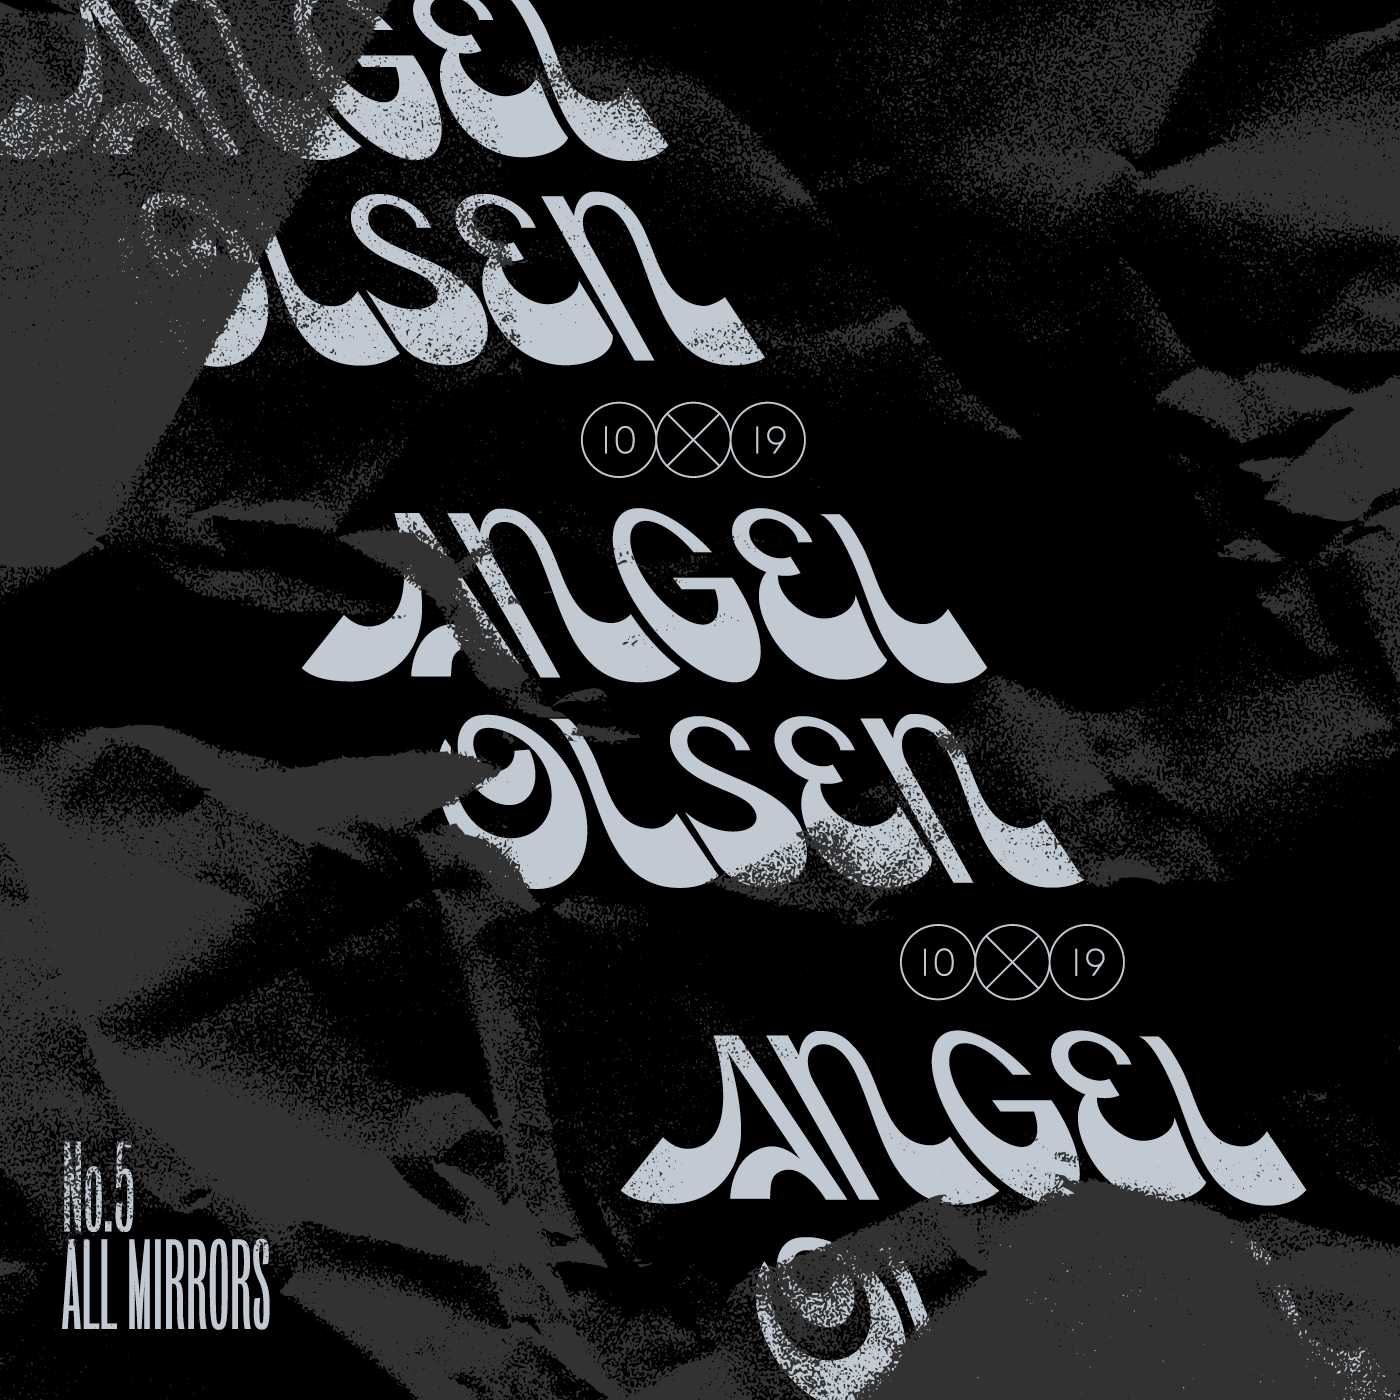 Angel Olsen album cover by Jen Hood for 10x19